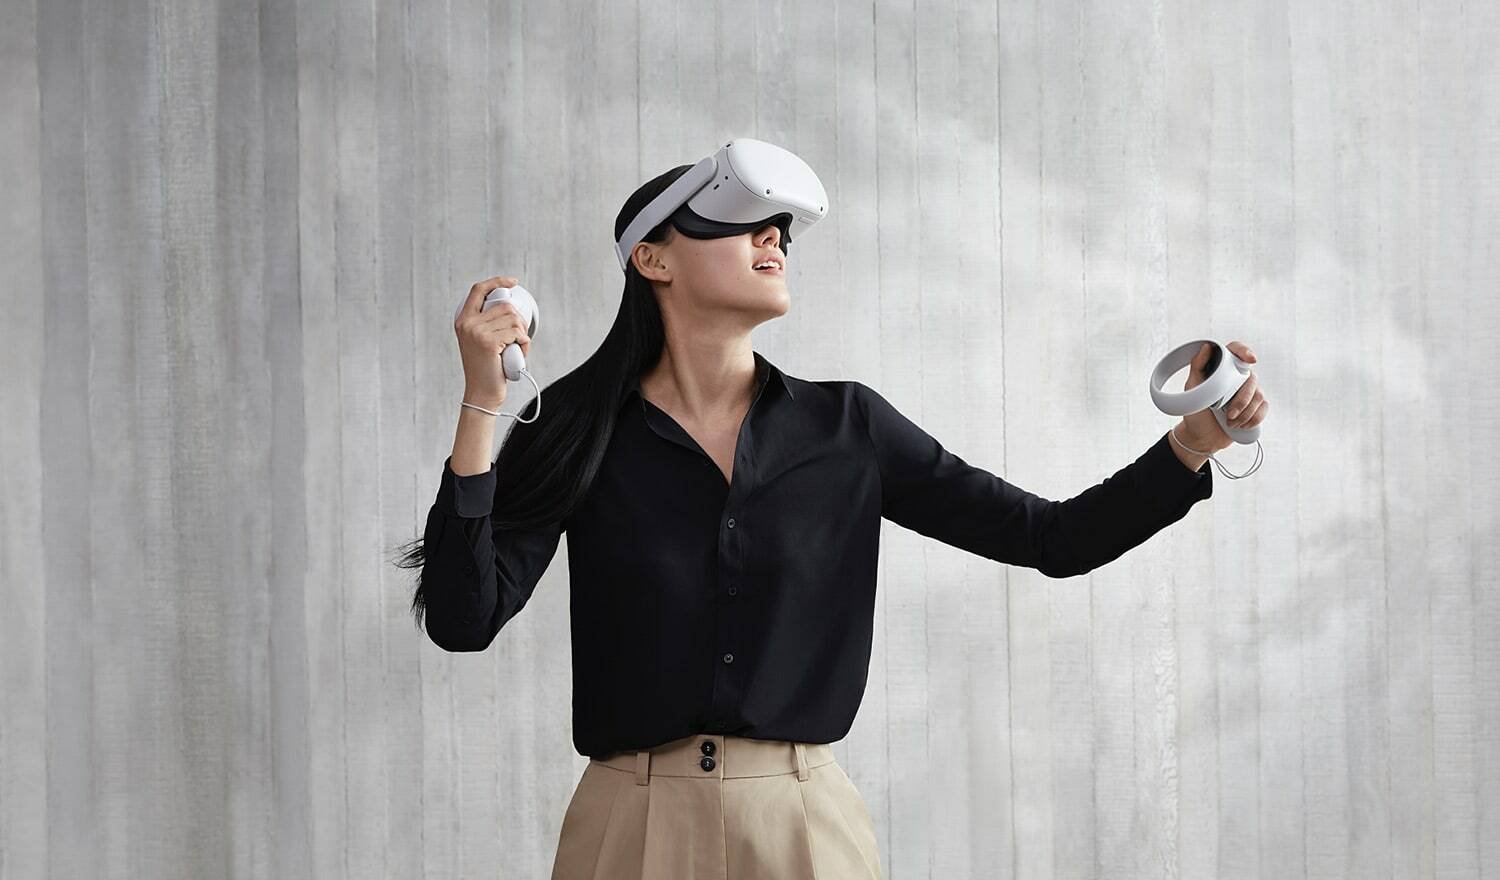 Immagine di Facebook, ologrammi e realtà virtuale su console nel futuro social